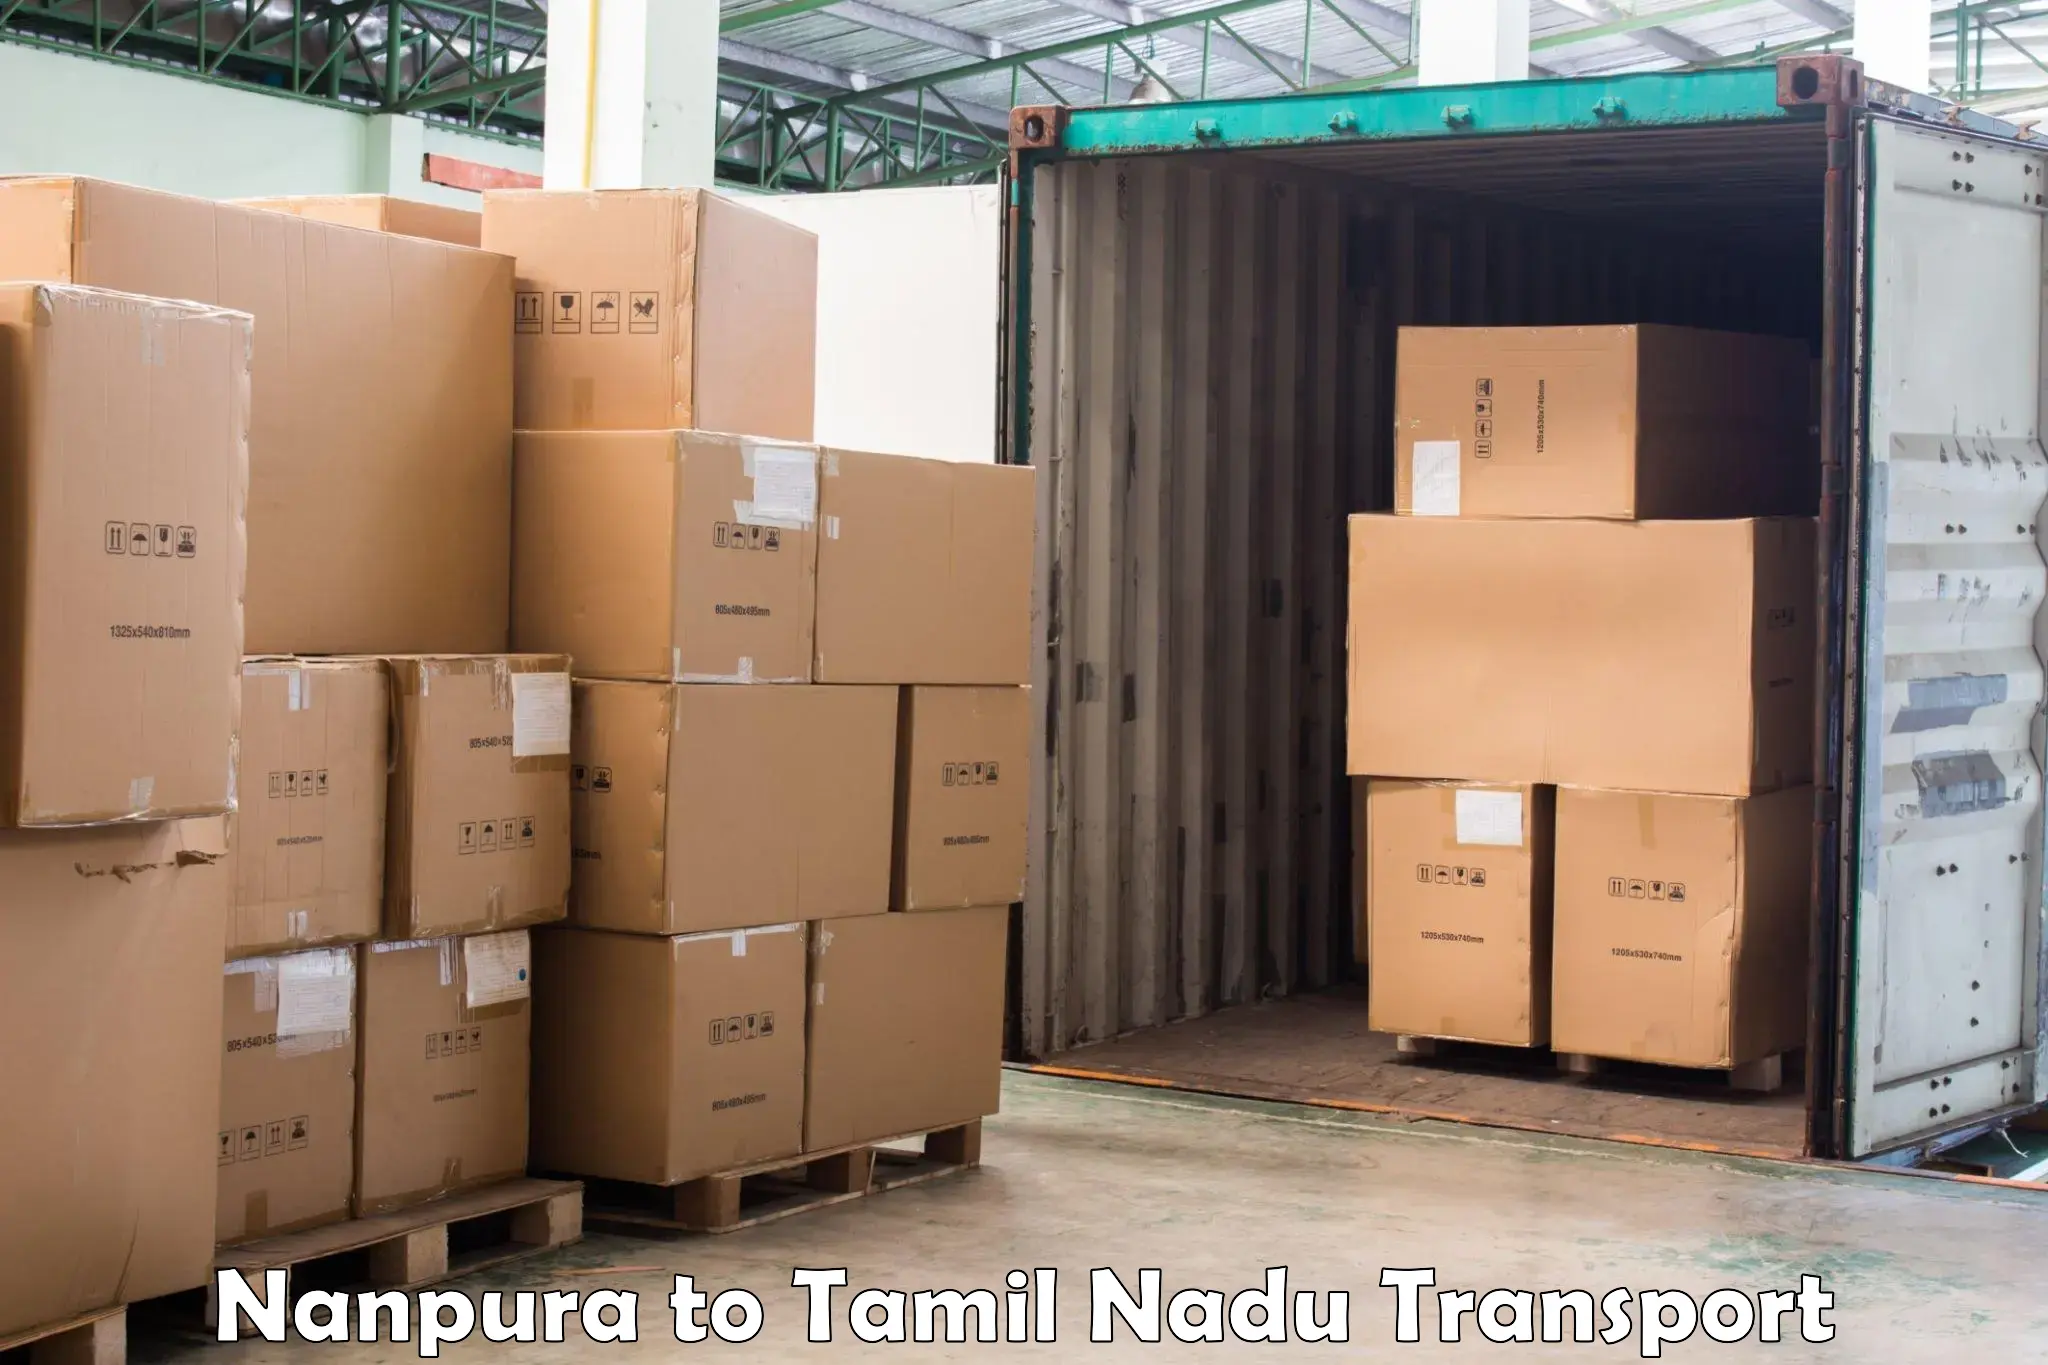 Nearest transport service Nanpura to Vilathikulam